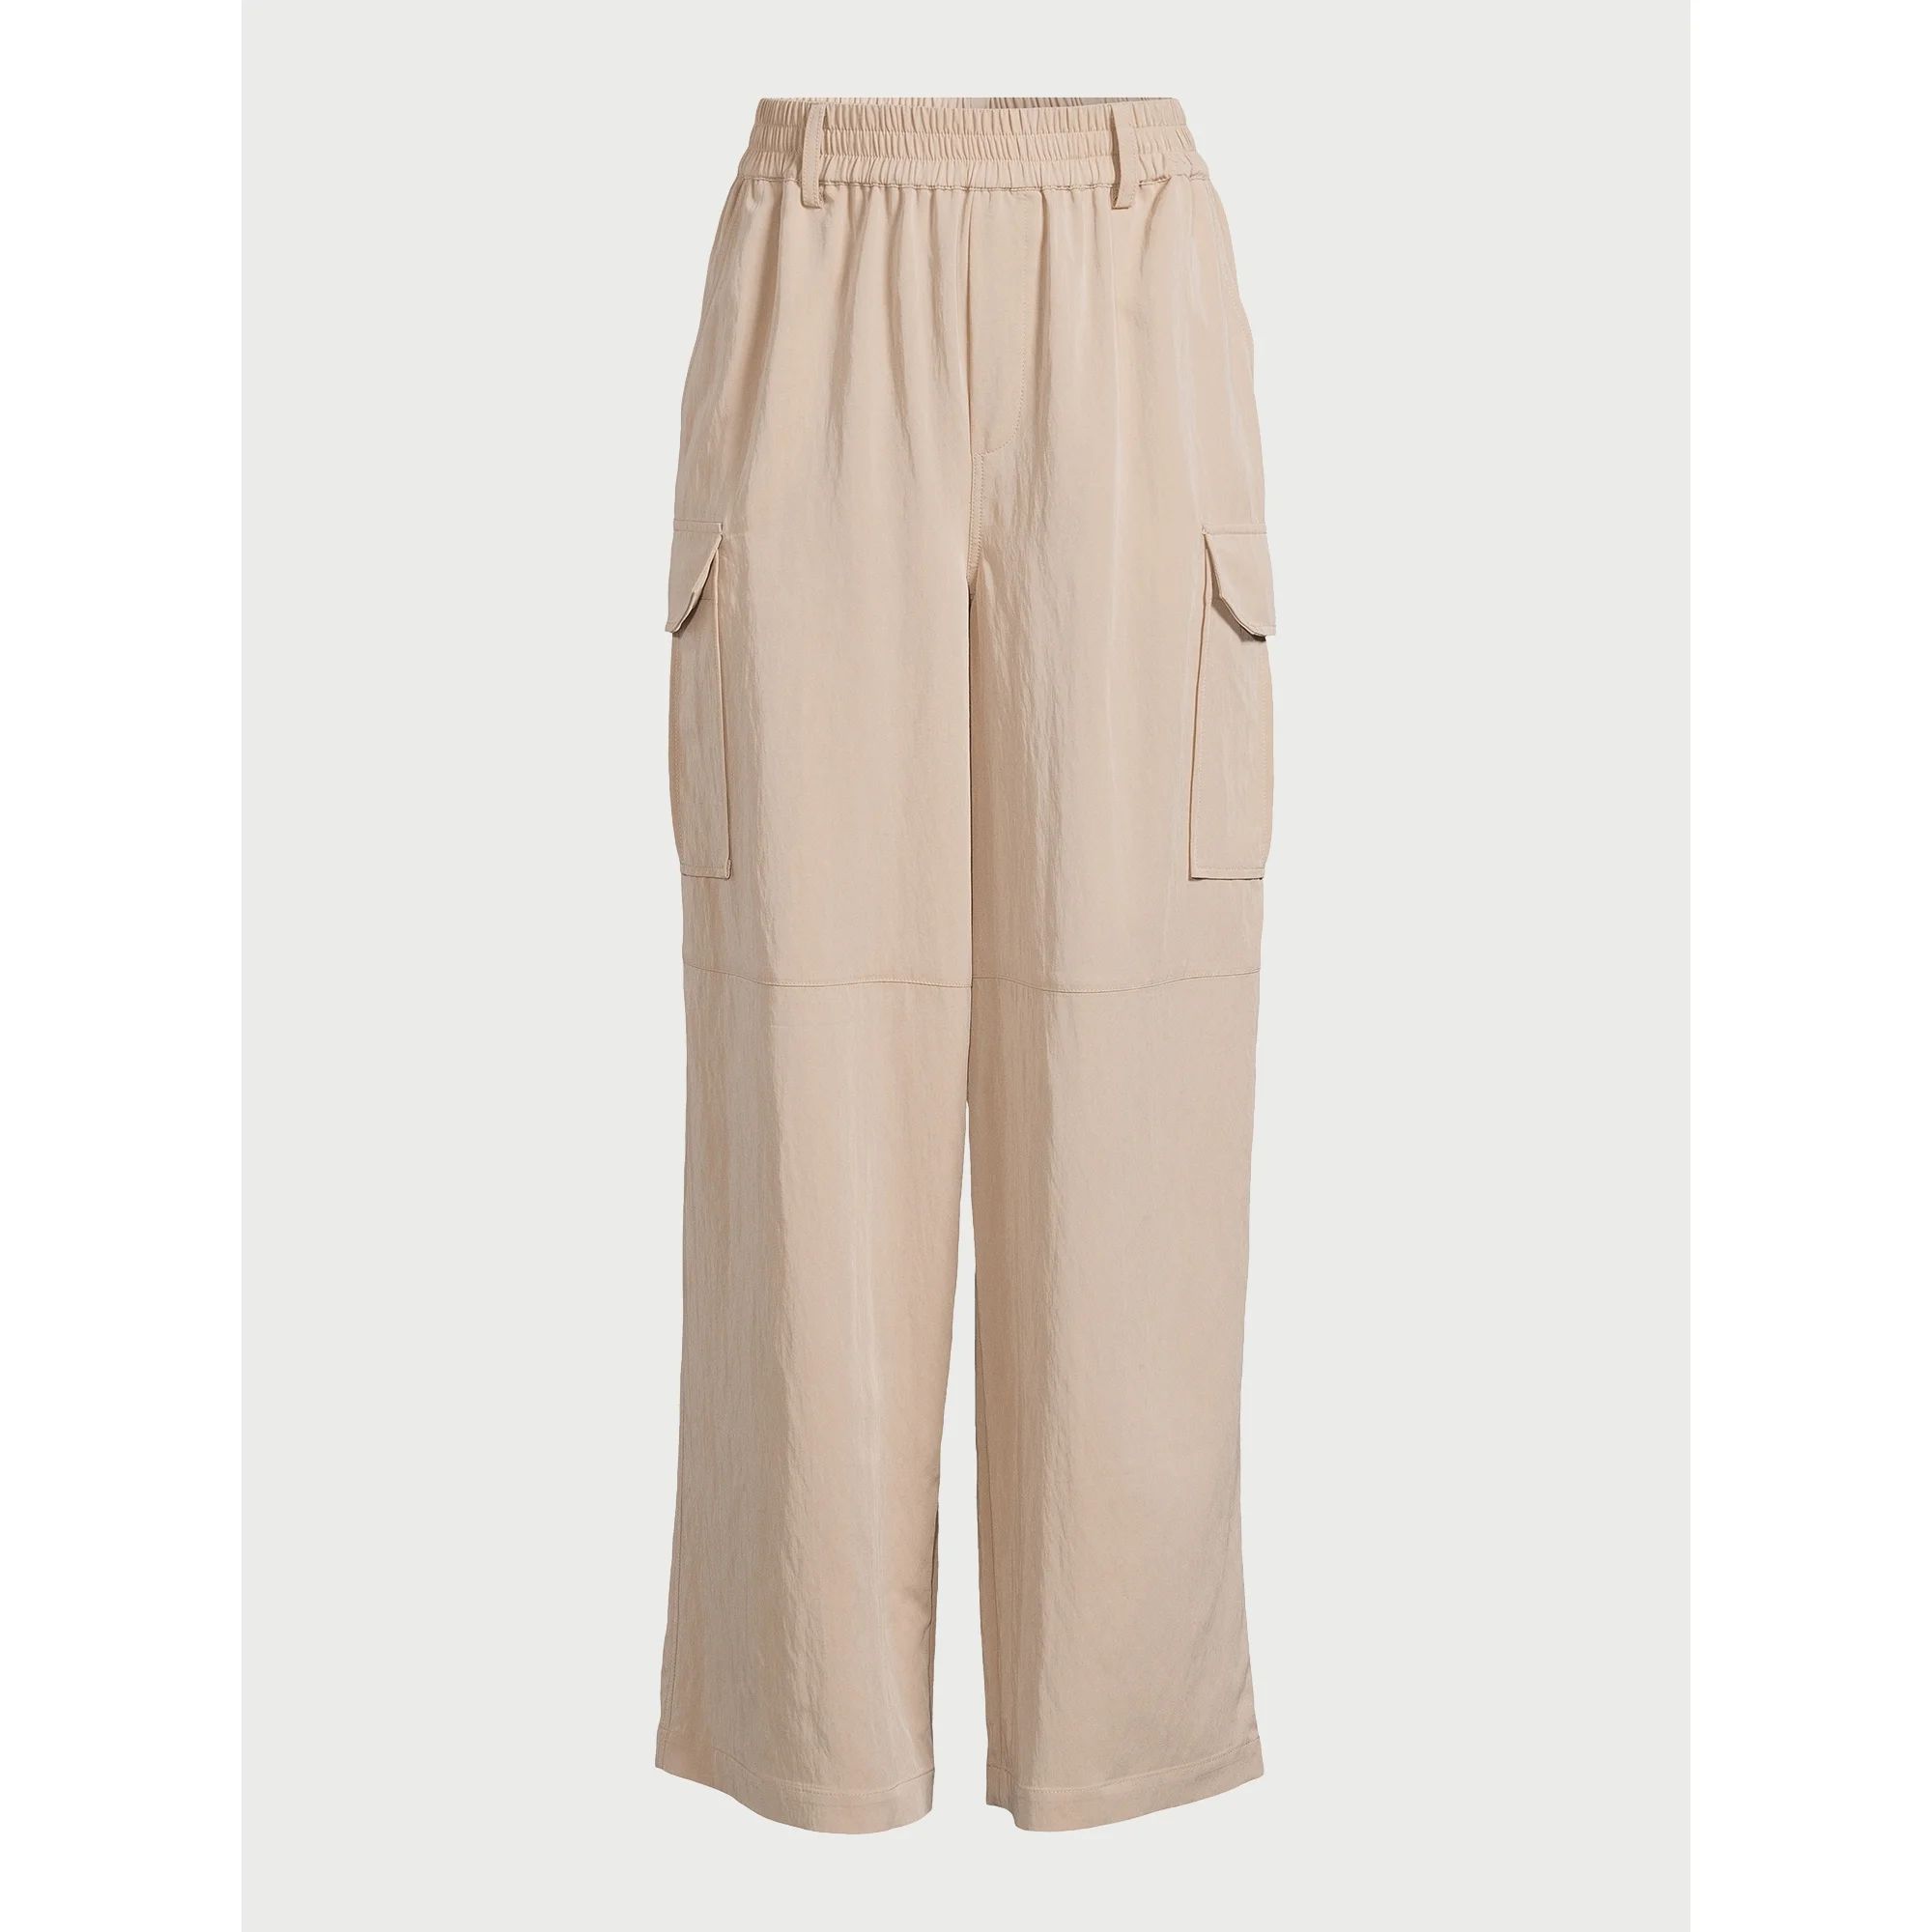 Scoop Women’s Cargo Pants, Sizes XS-XXL - Walmart.com | Walmart (US)